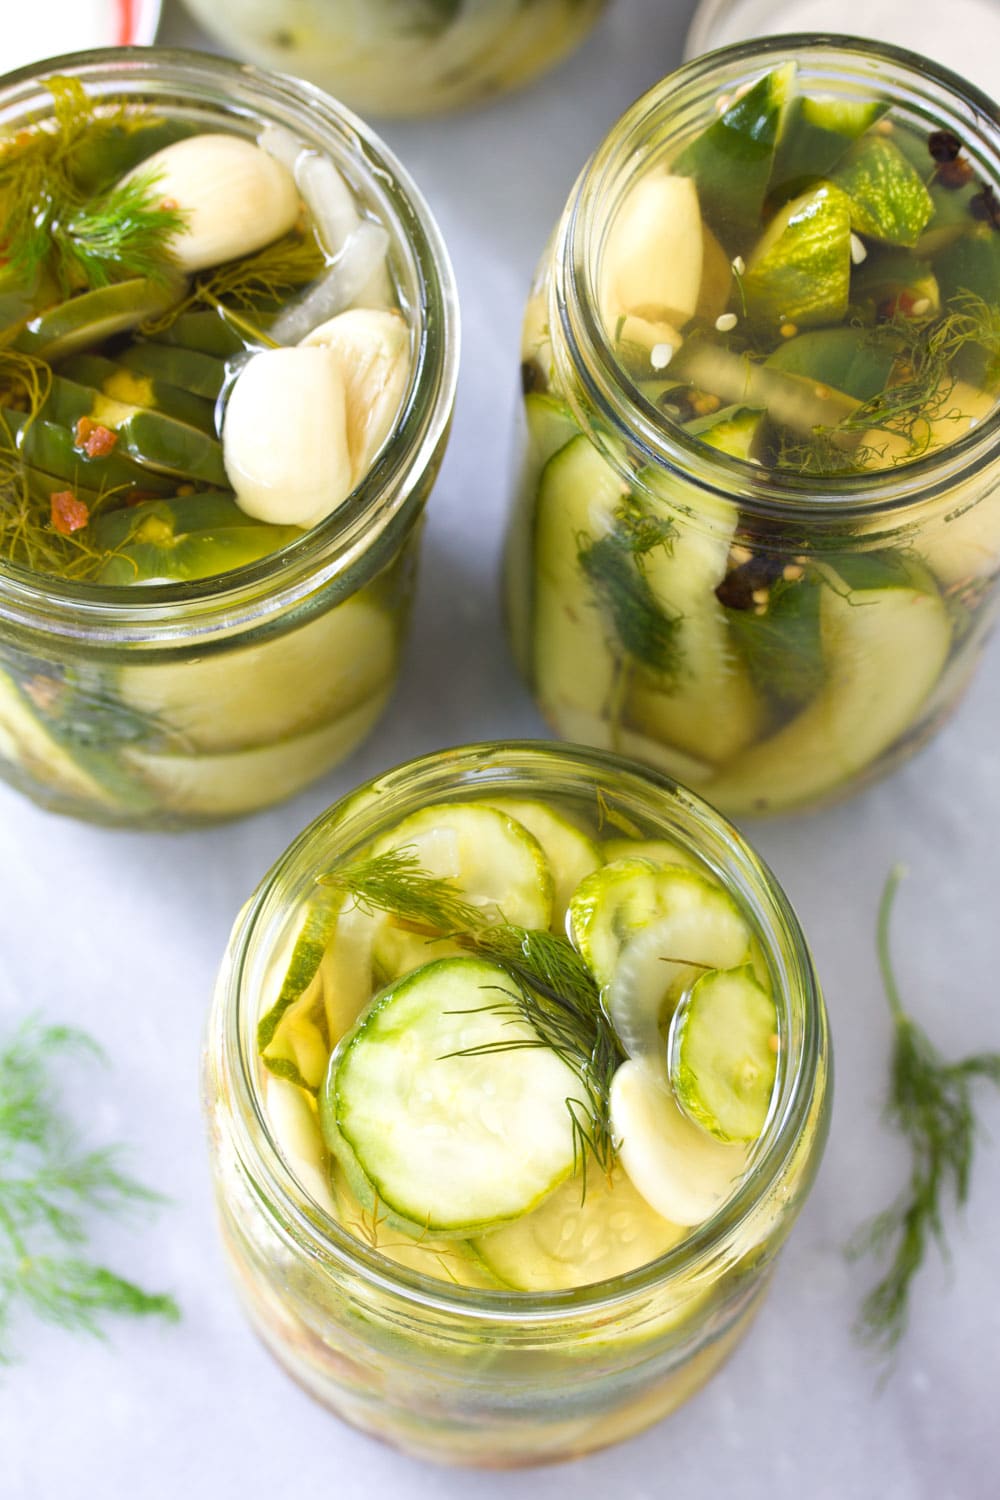 Pickle Recipe #ASpicyPerspective #Pickles #RefrigeratorPickles #HomemadePickles #PickleRecipe #HowtoMakePickles